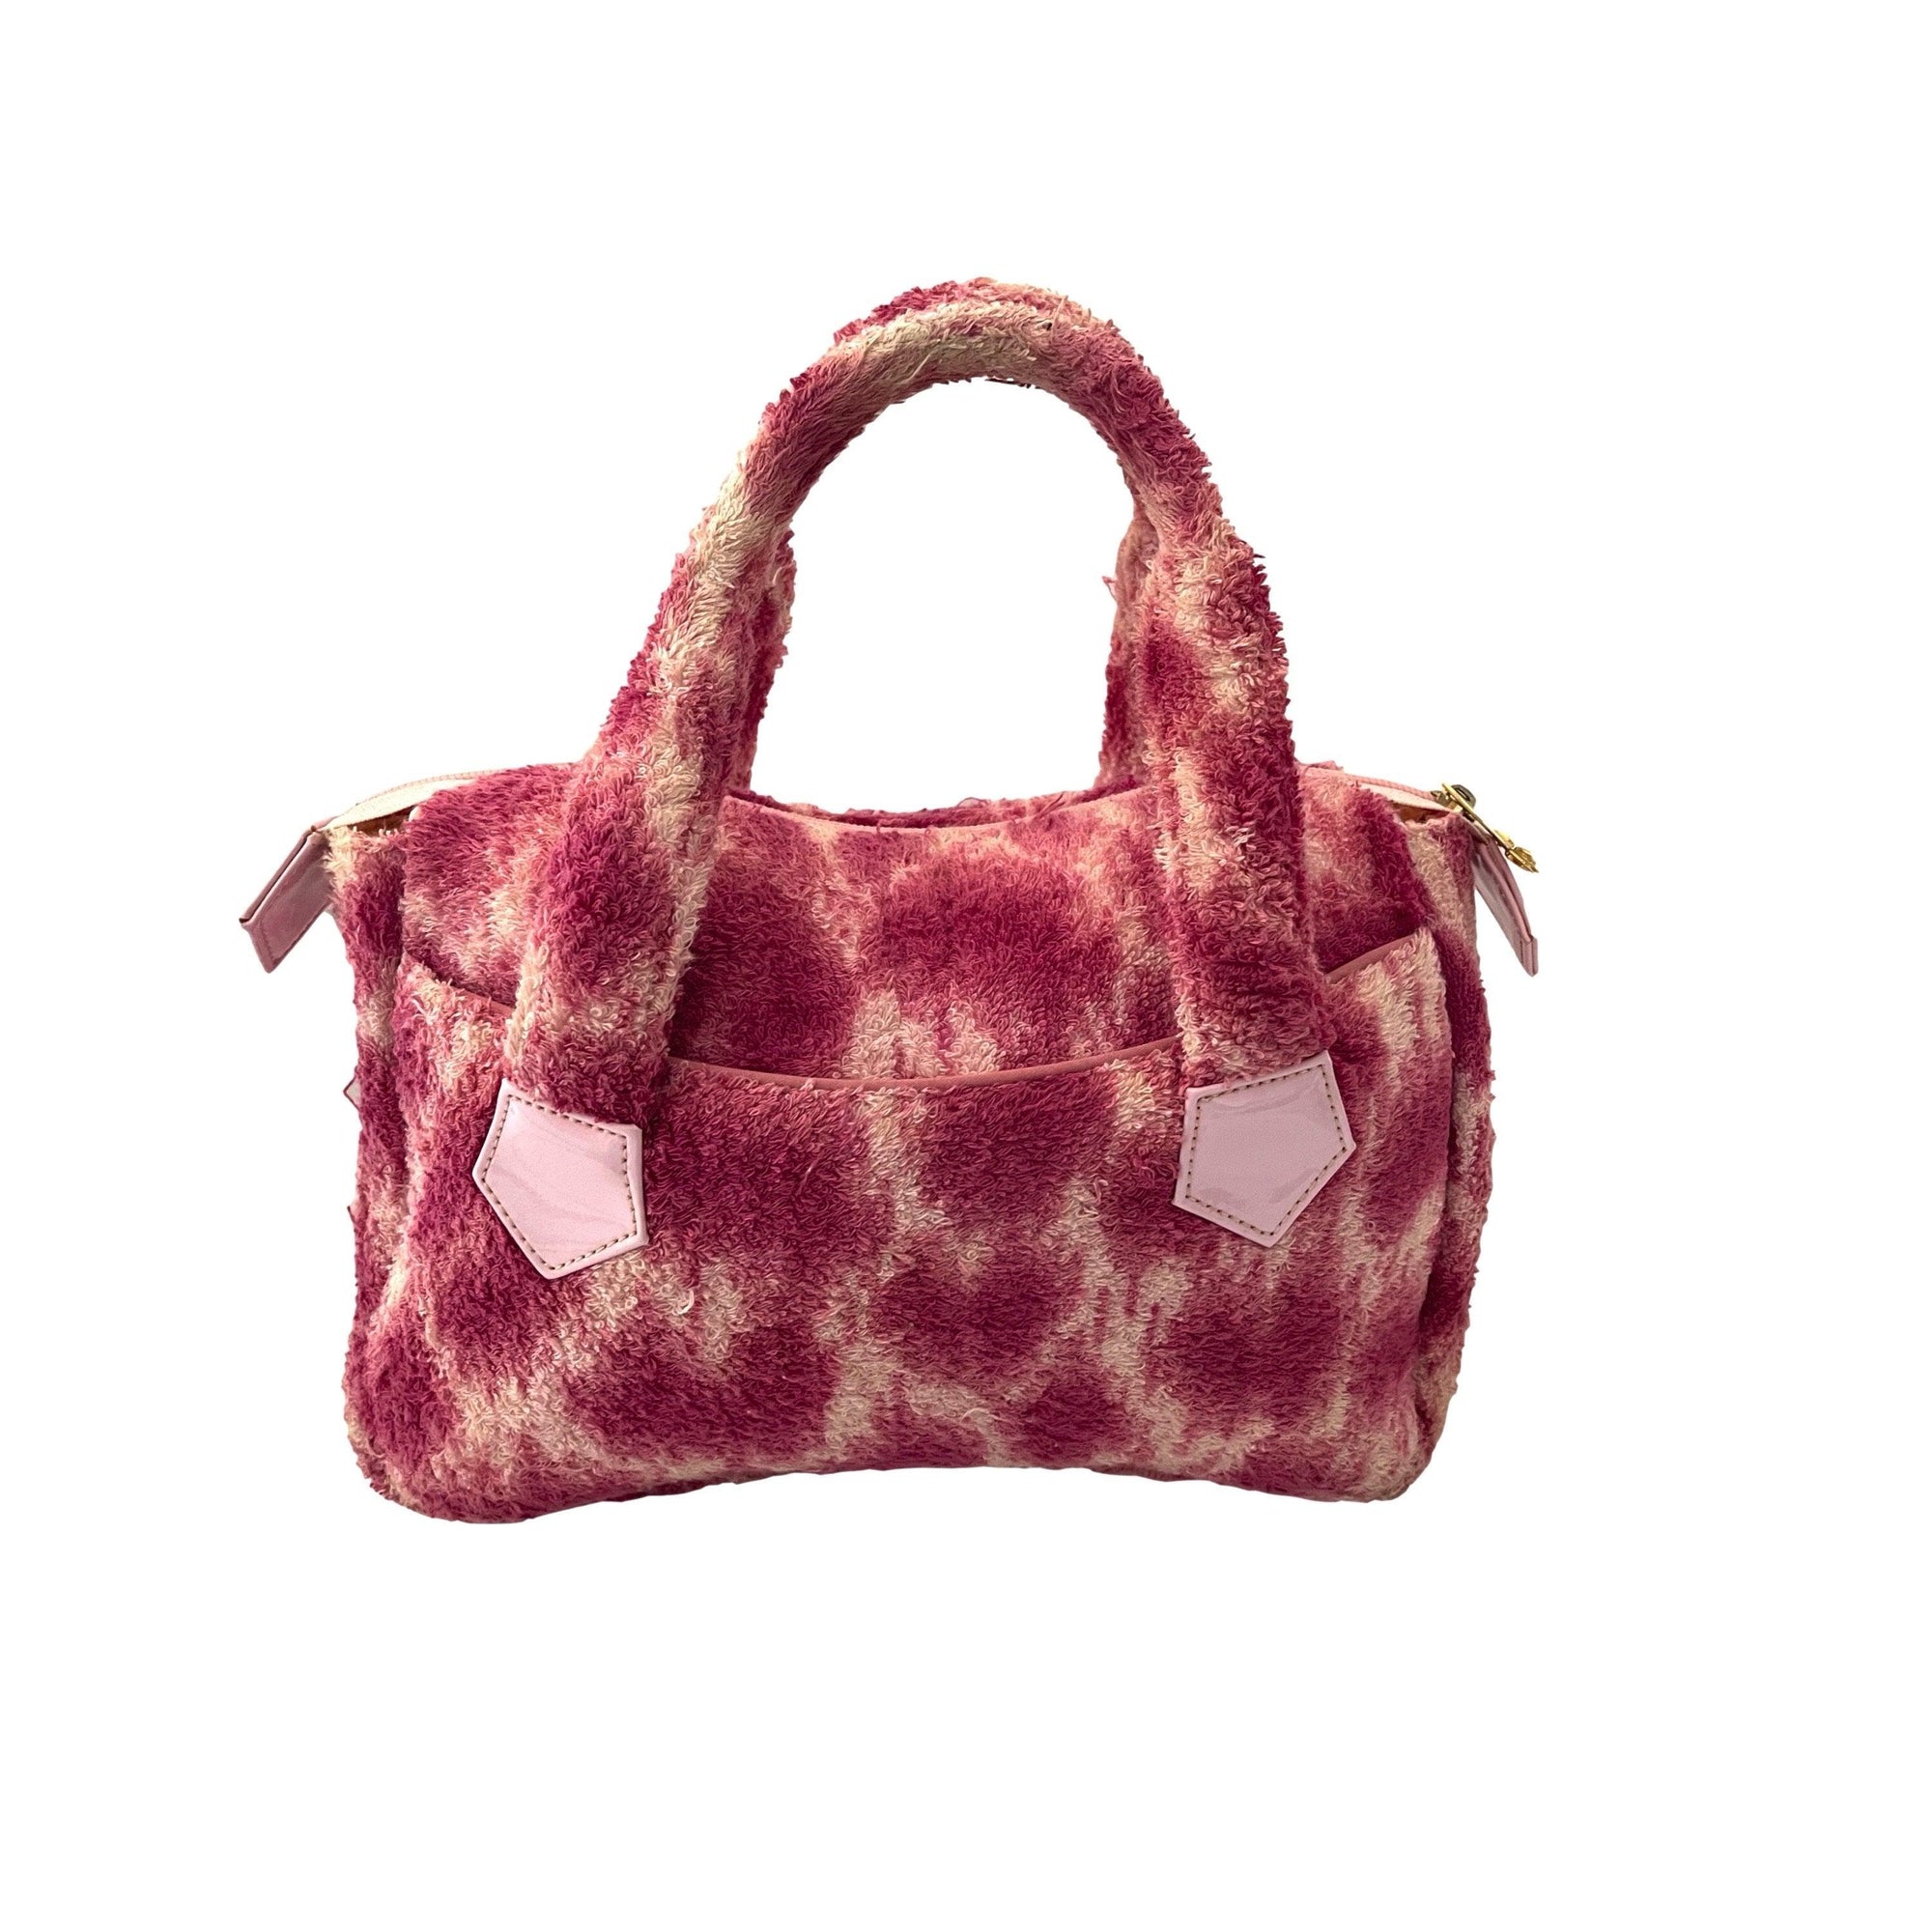 Vivienne Westwood Pink Tie Dye Terry Cloth Bag - Handbags